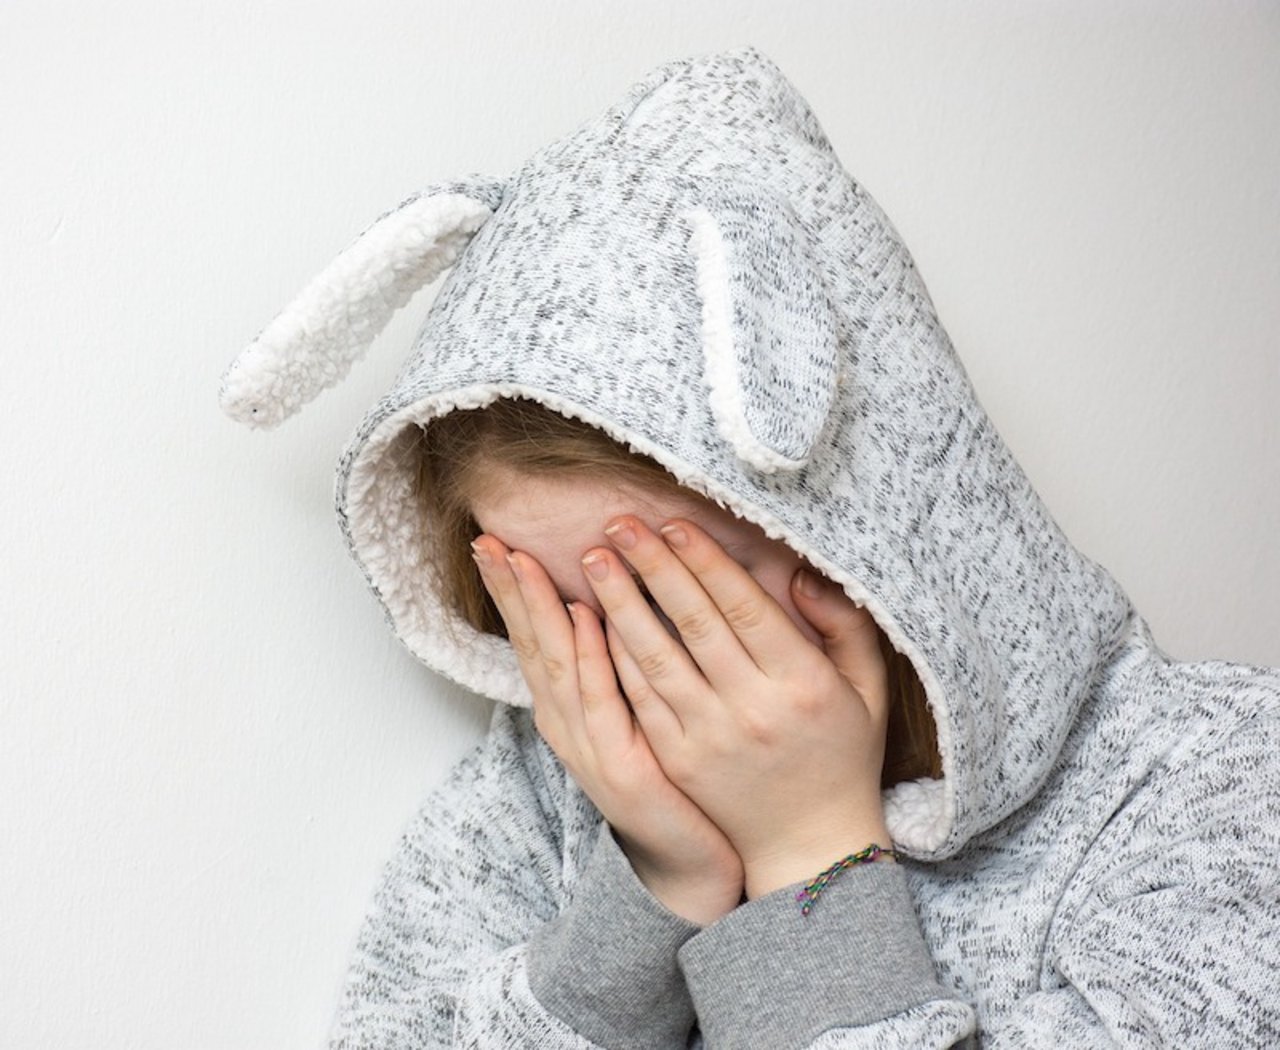 Kinder, die gemobbt werden, können langfristig traumatisiert sein. (Bild Pixaby)